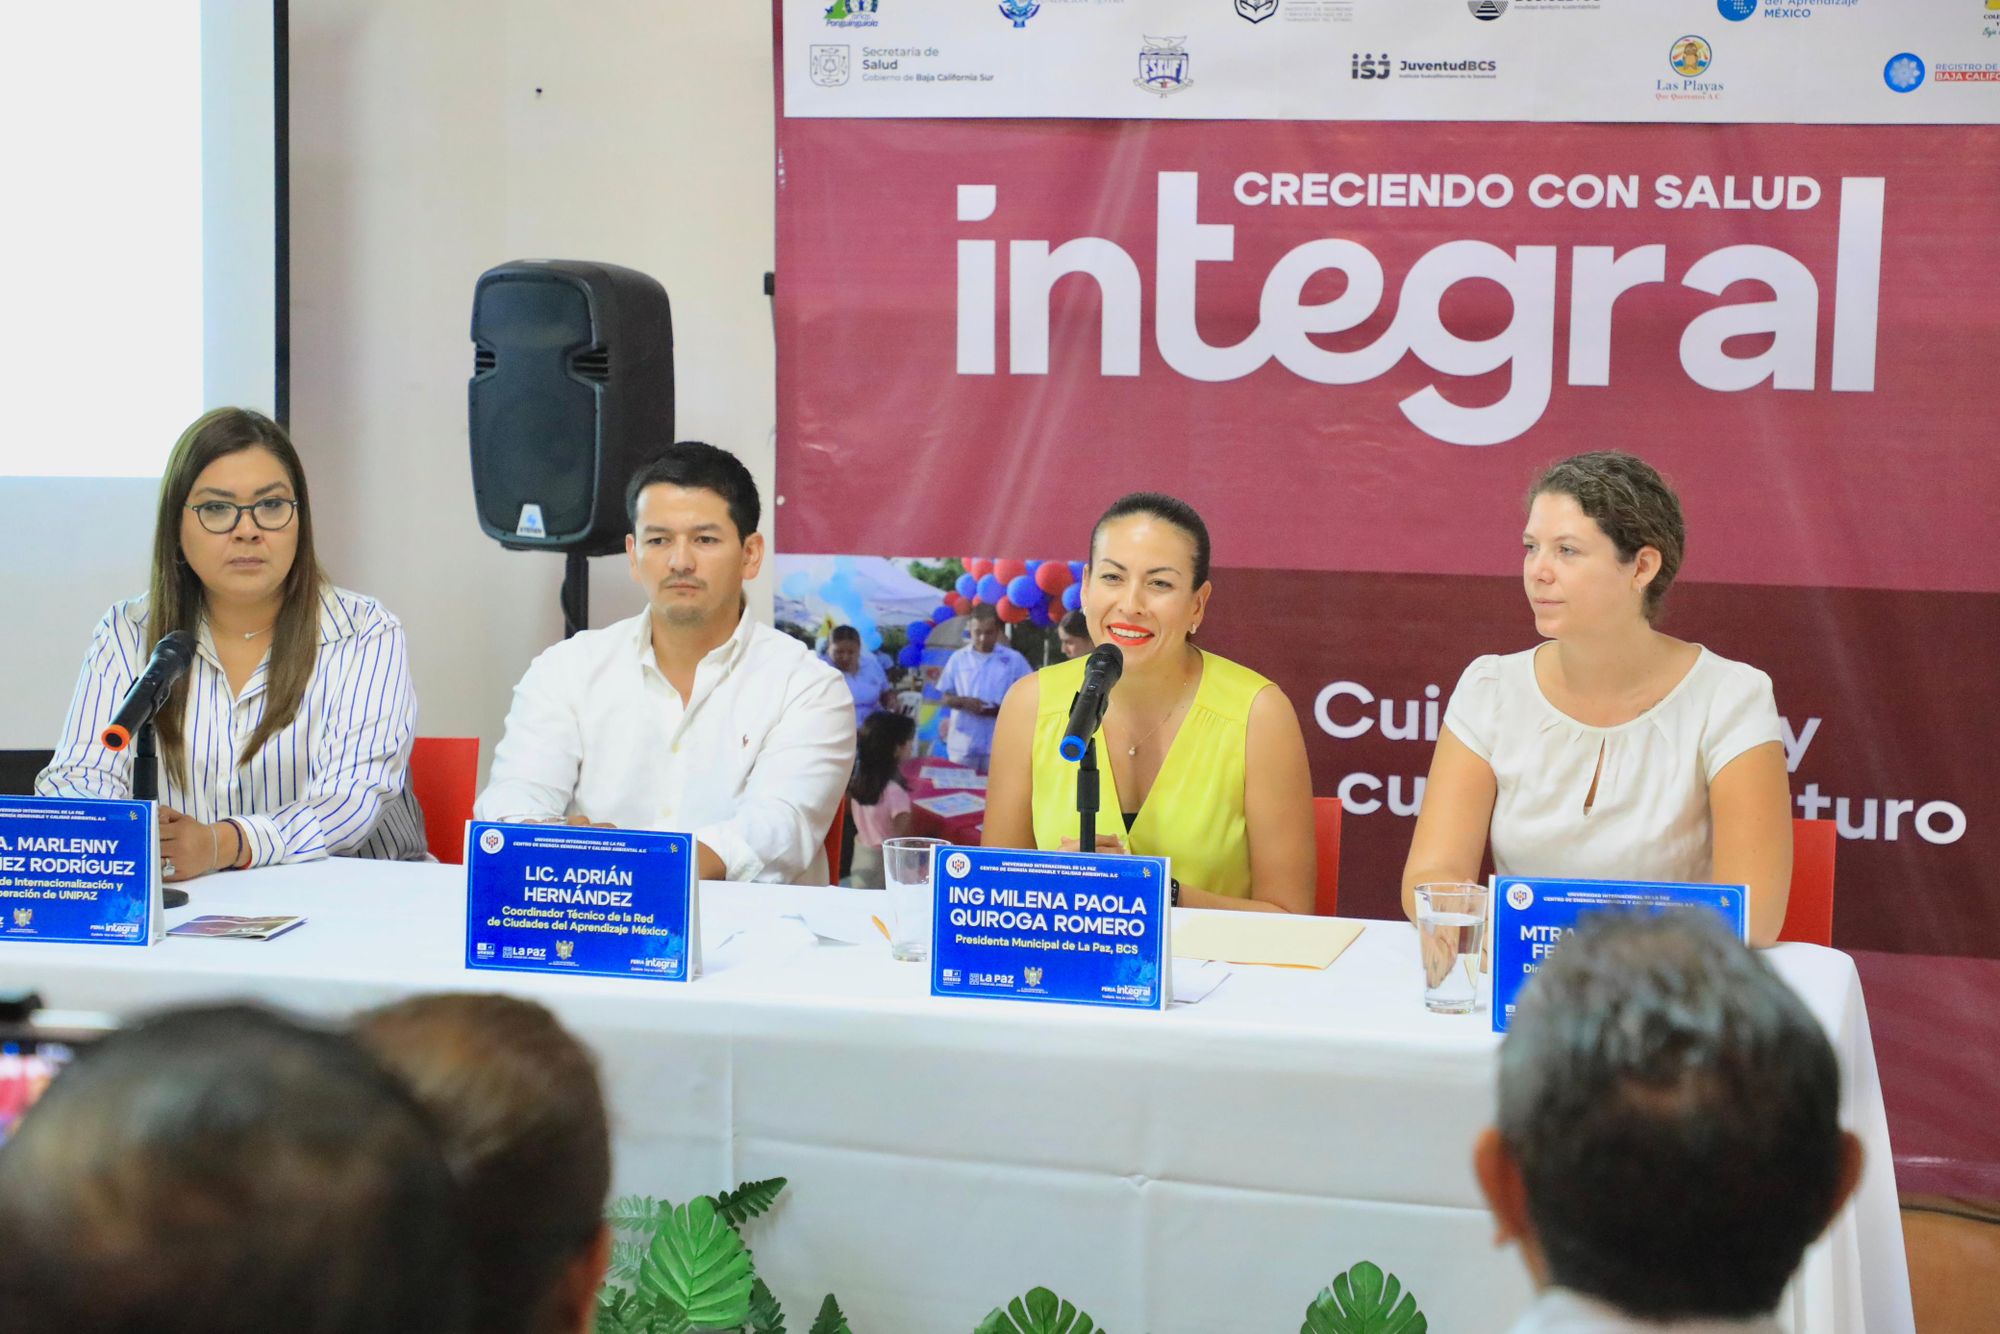 Se suma Ayuntamiento de La Paz al programa “Creciendo con salud integral”